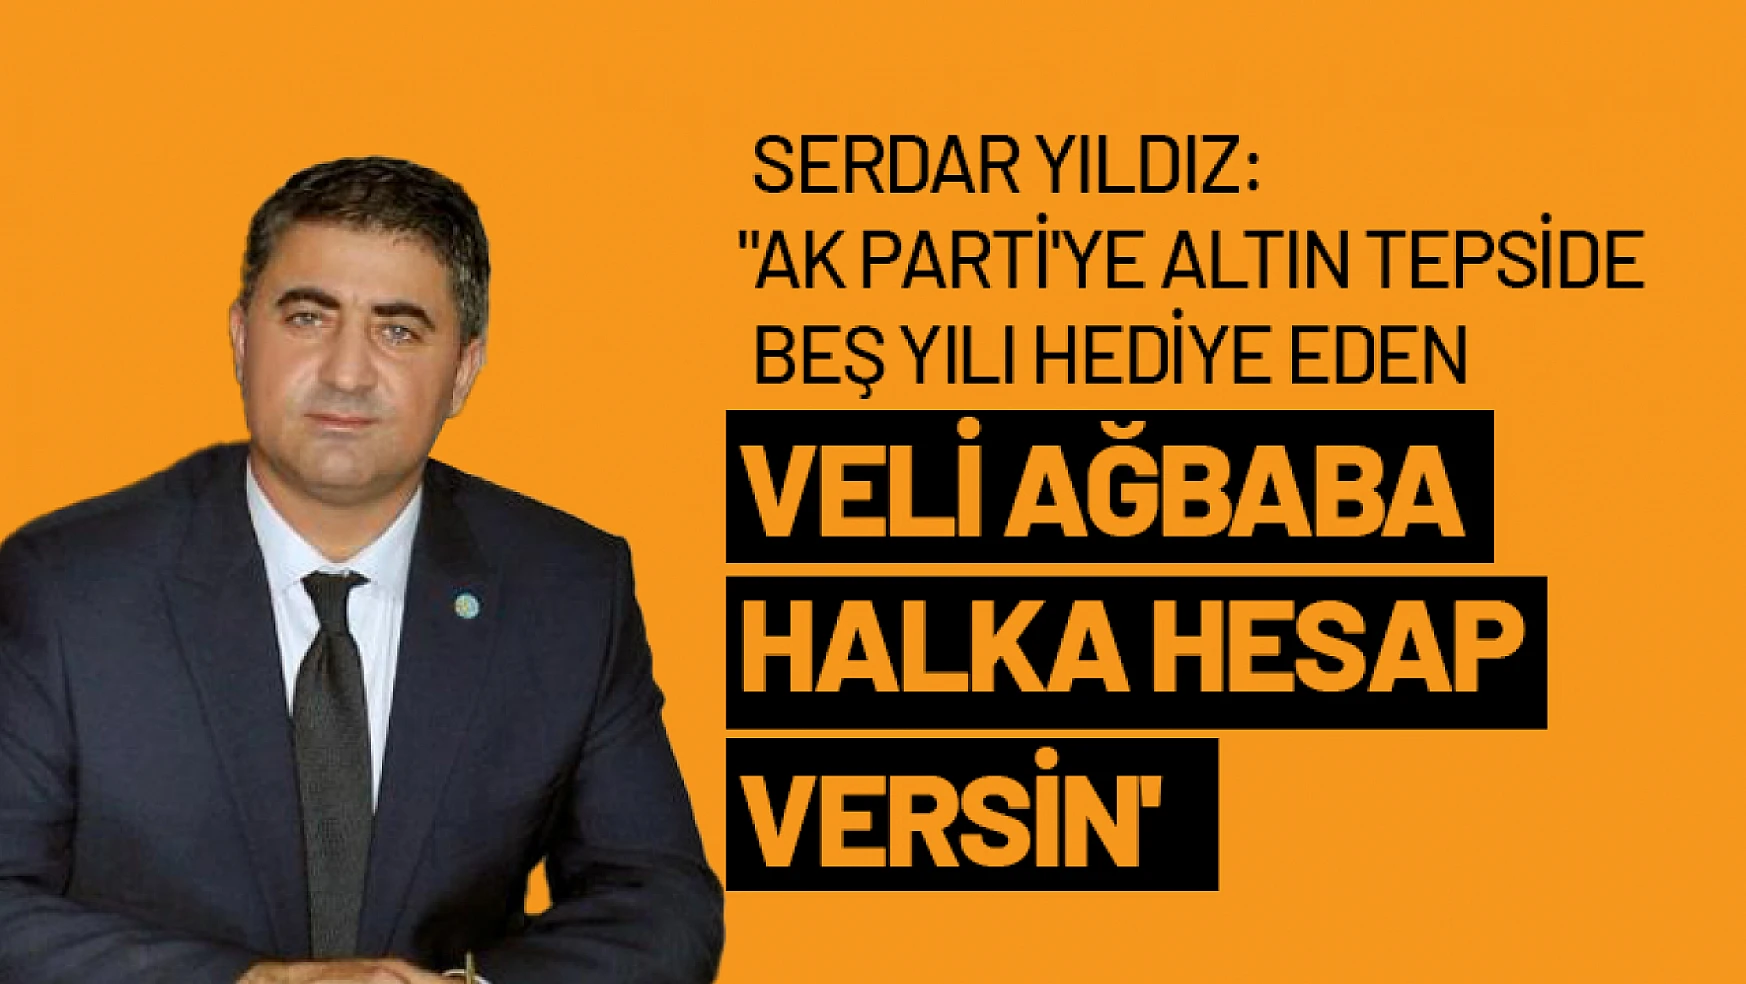 Yıldız: 'AK Parti'ye altın tepside beş yılı hediye eden Veli Ağbaba halka hesap versin'